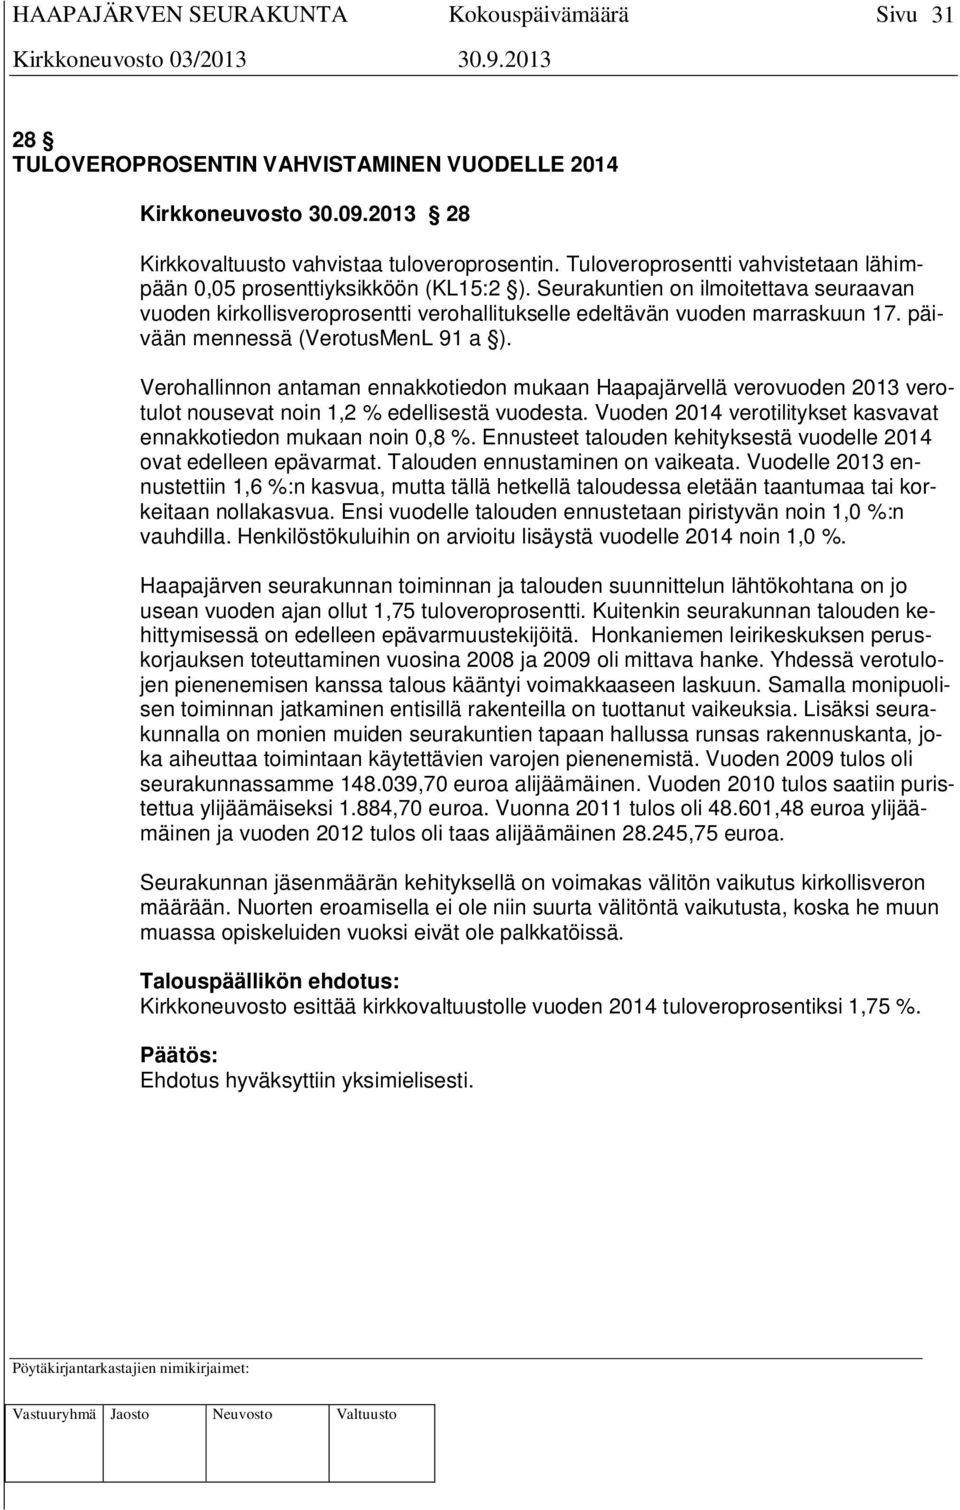 päivään mennessä (VerotusMenL 91 a ). Verohallinnon antaman ennakkotiedon mukaan Haapajärvellä verovuoden 2013 verotulot nousevat noin 1,2 % edellisestä vuodesta.